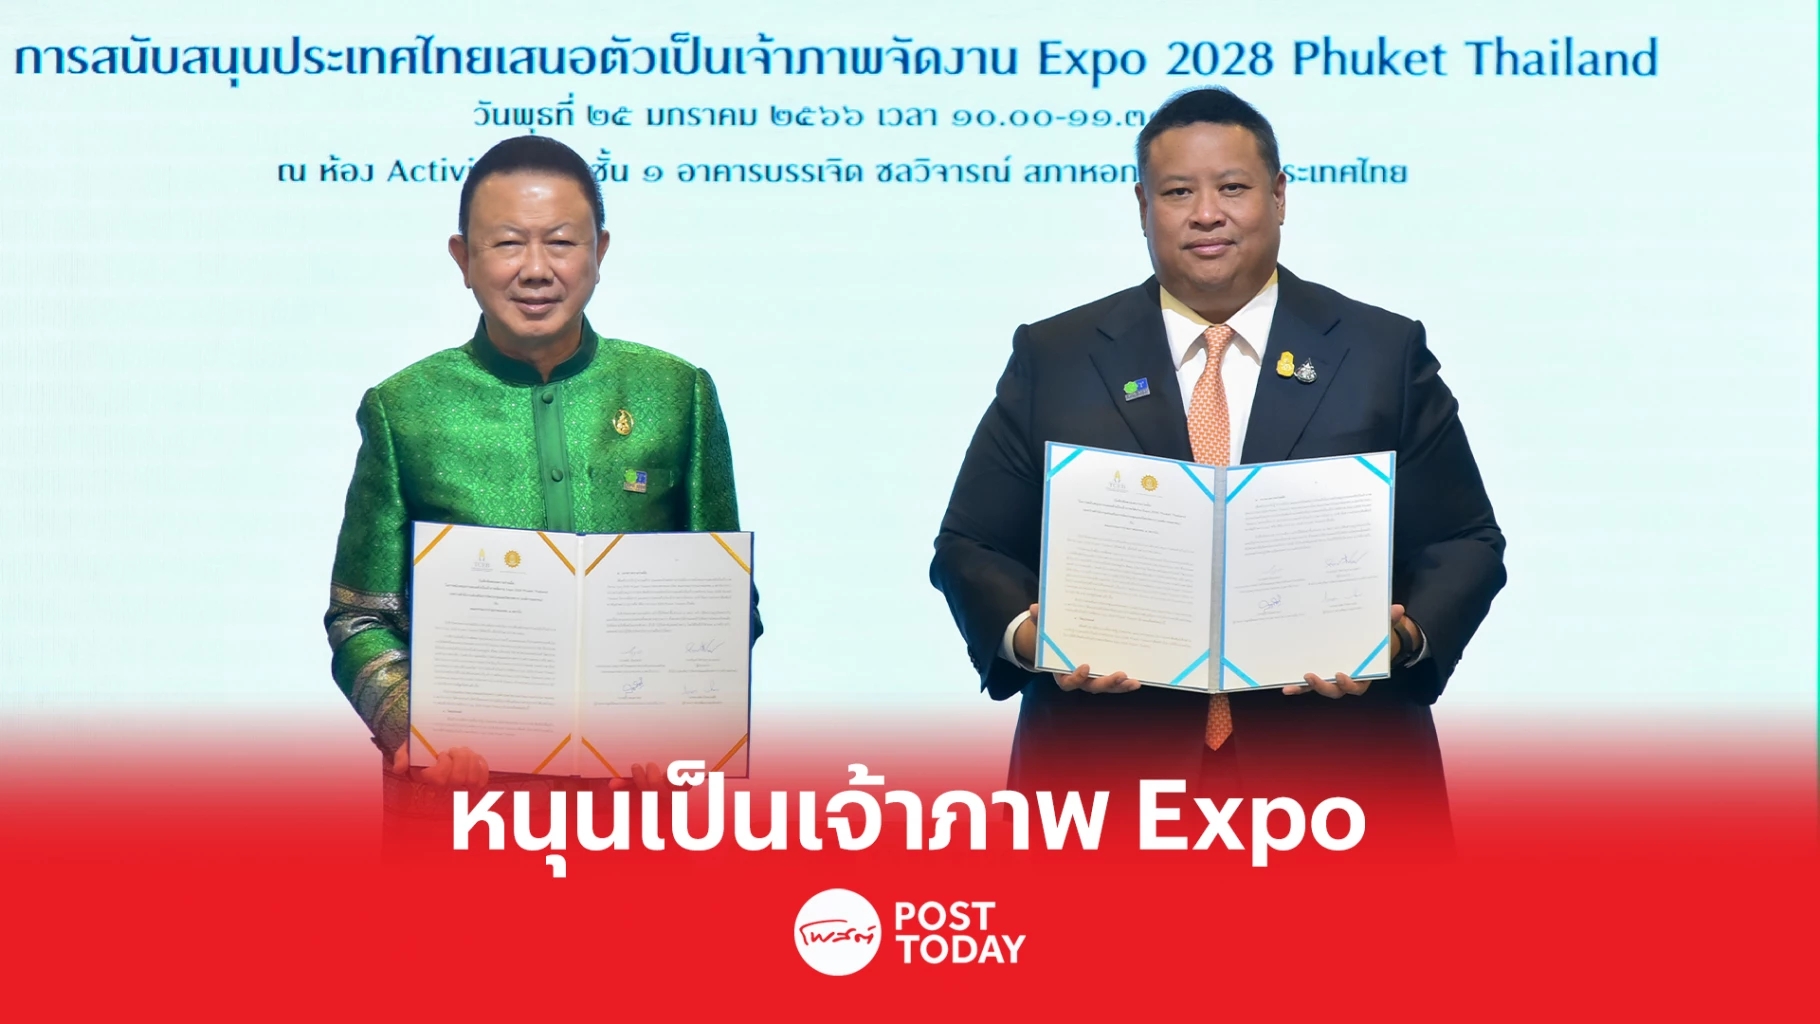 กกร.จับมือทีเส็บ สนุนไทยเป็นเจ้าภาพจัดงาน “Expo 2028 Phuket Thailand”